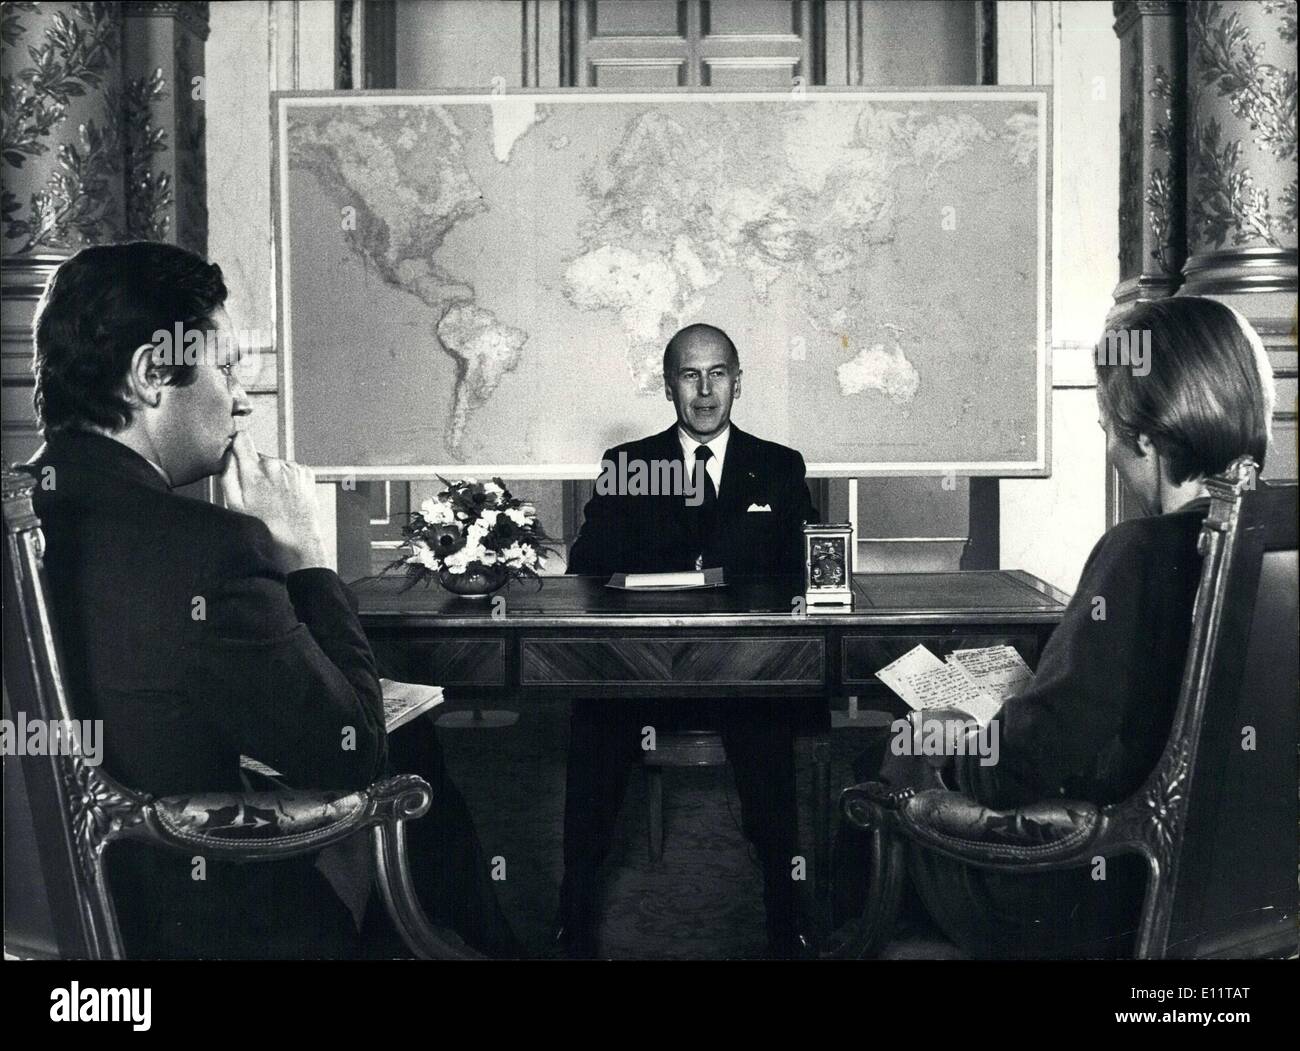 27 febbraio 1980 - Il Presidente definita la posizione della Francia in materia di affari esteri durante i 50 minuti di programma TV e discusso l'invasione sovietica dell'Afghanistan in particolare. Lo spettacolo è stato registrato presso l'Elysee Palace. Foto Stock